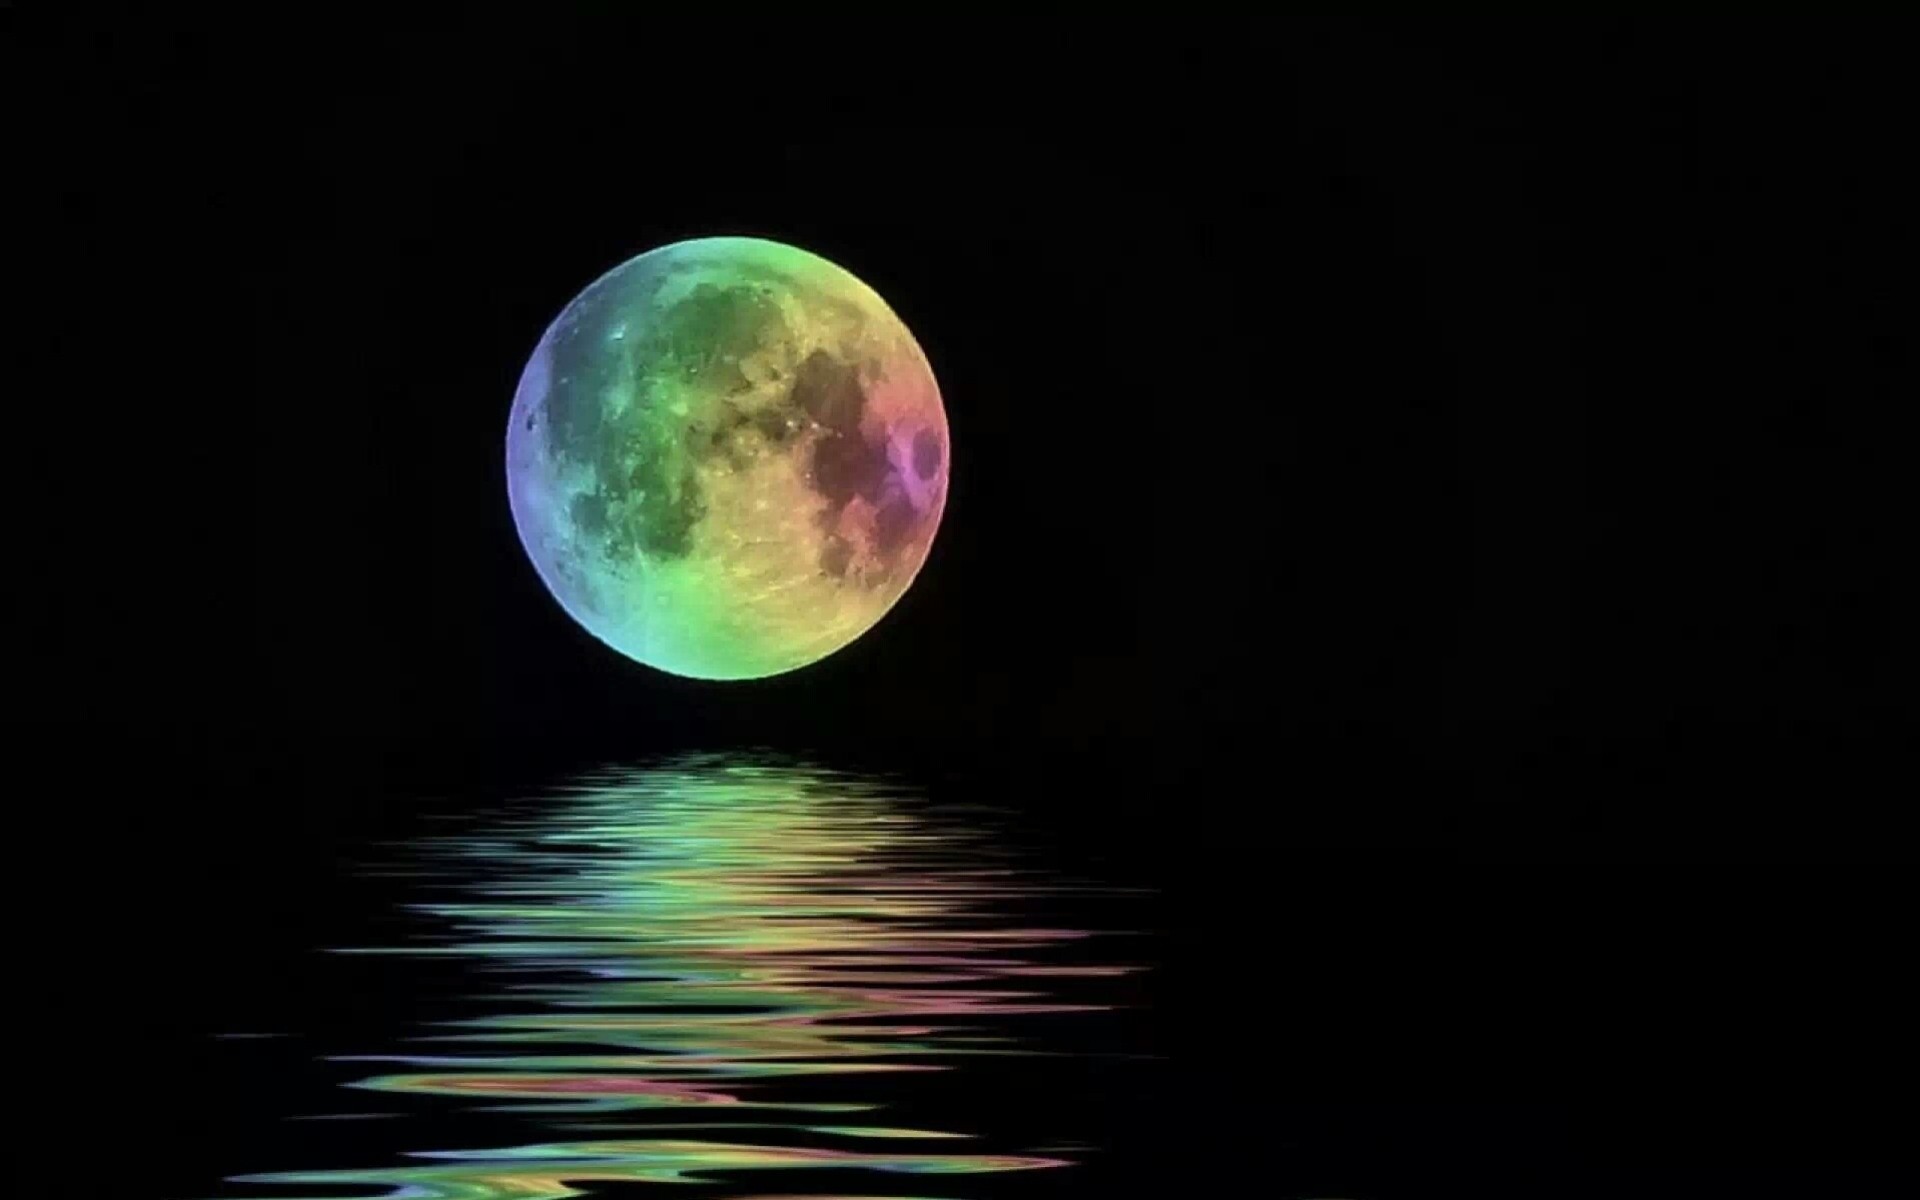 Сказочная луна над морем - обои на рабочий стол